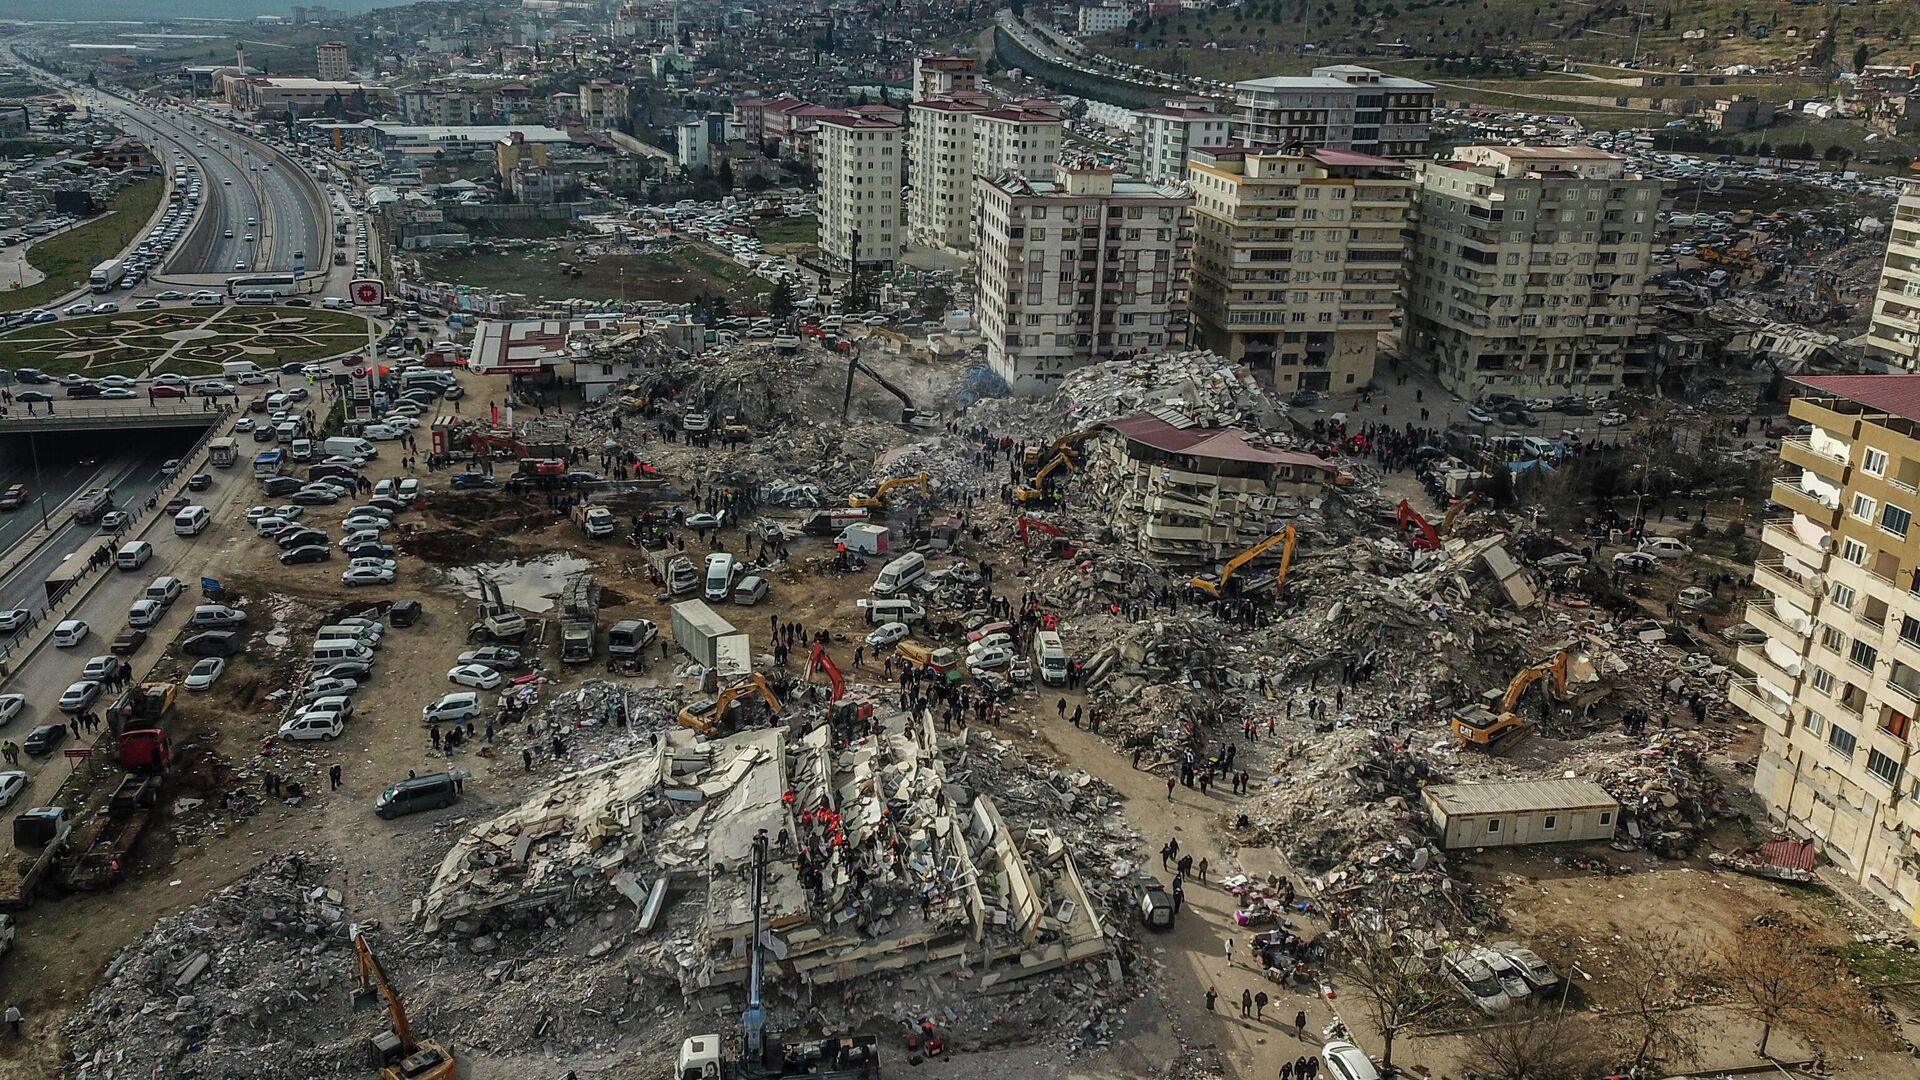 7 января 2023 г. Кахраманмараш Турция землетрясение. Землетрясение в Турции 2023. Землетрясение в Турции 2023 Кахраманмараш. Землетрясение в Турции и Сирии 2023.